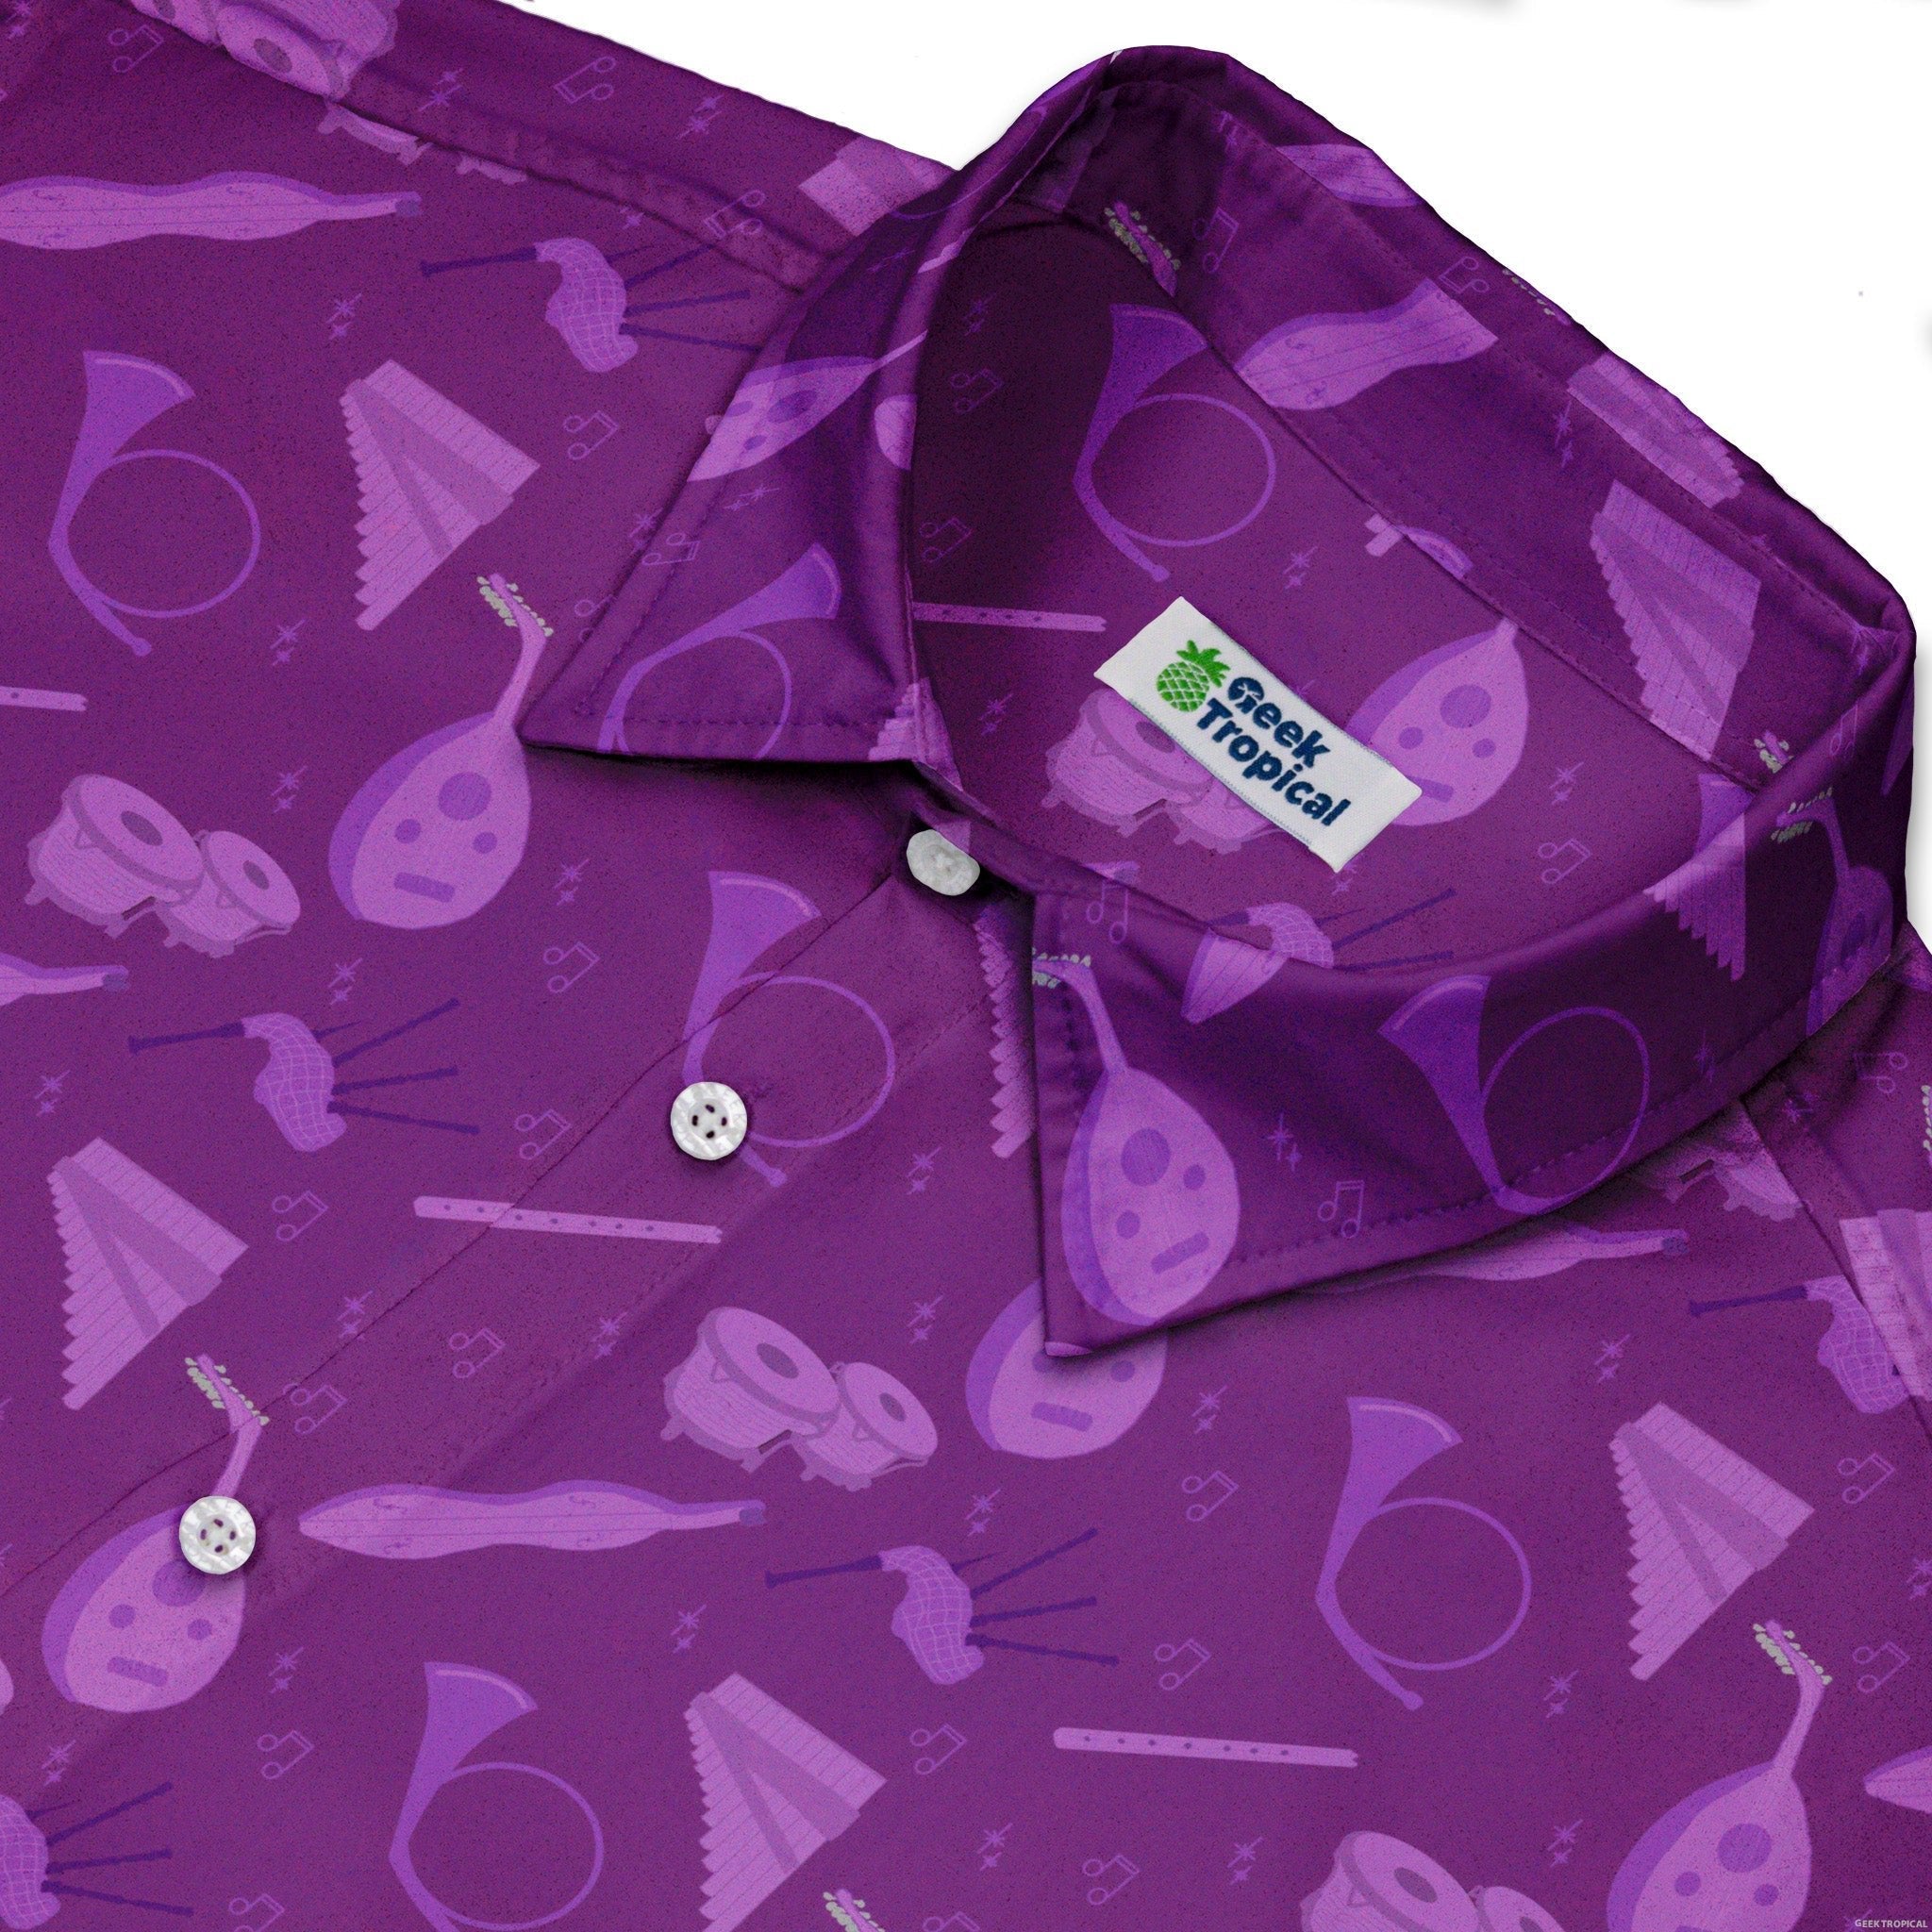 Dnd Bard Class Button Up Shirt - adult sizing - Design by Heather Davenport - dnd & rpg print